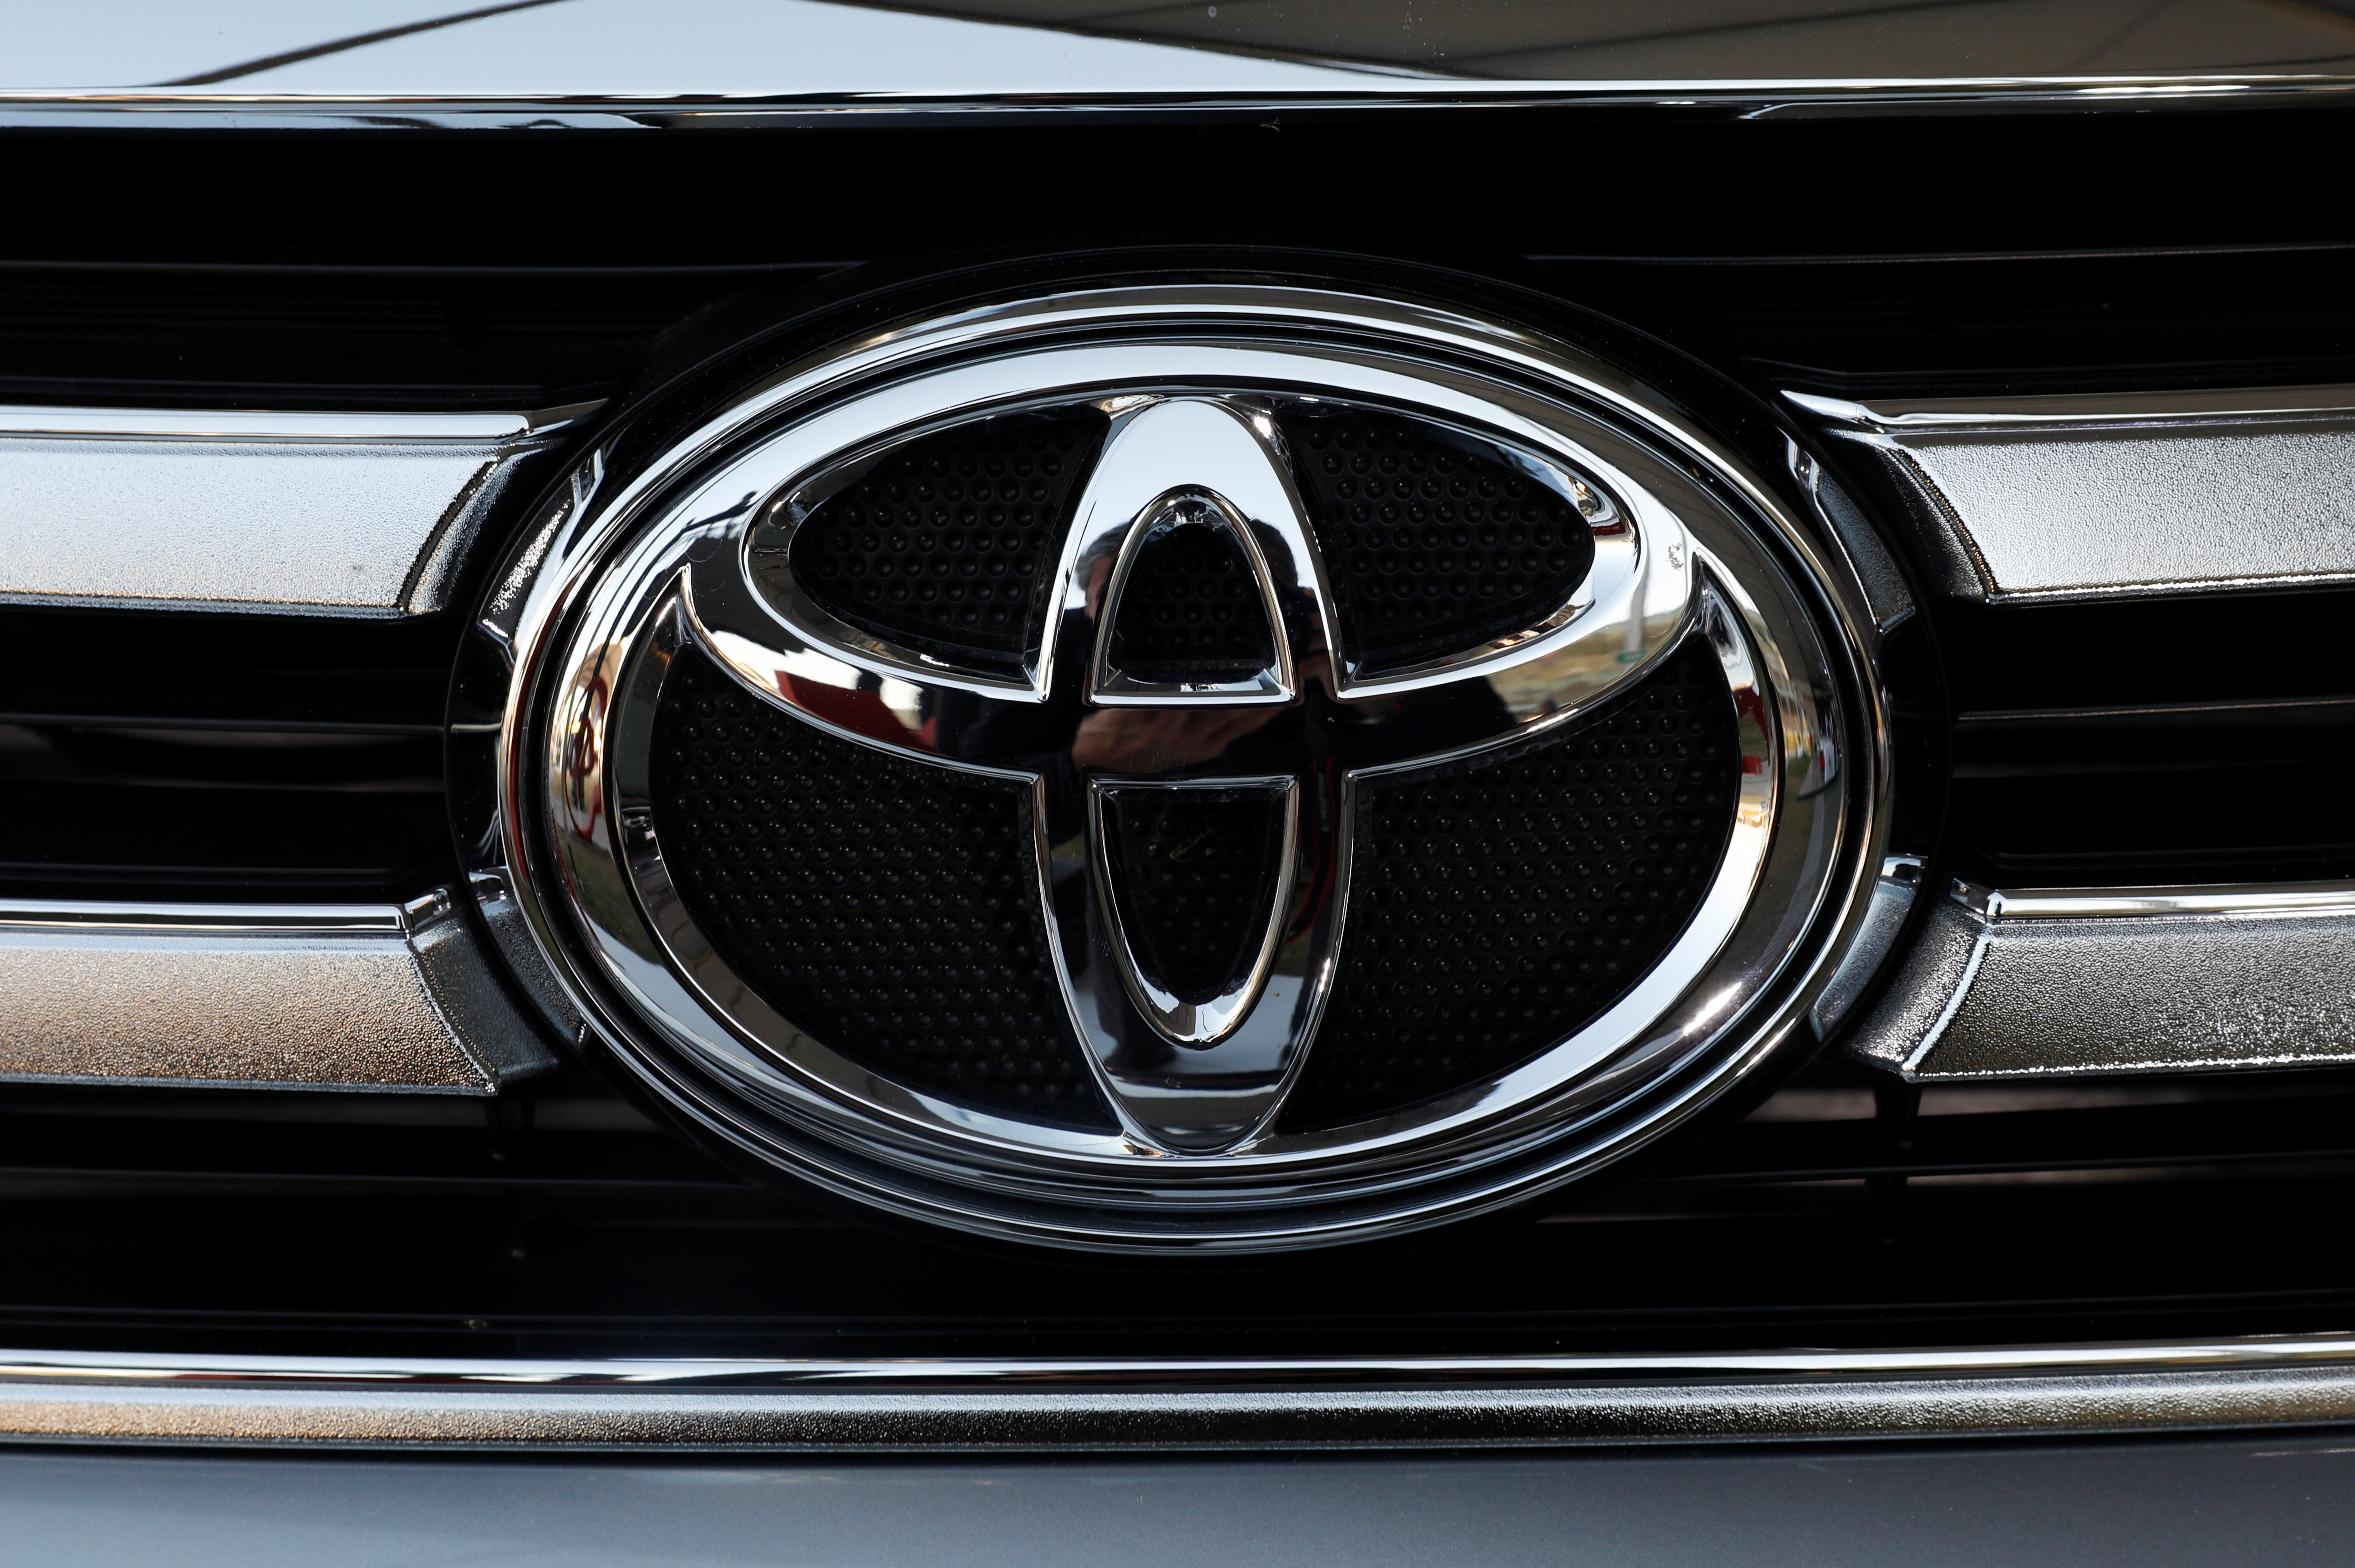 חברת Toyota Motor Corp.  הלוגו נראה על מכונית בתערוכת הרכב הבינלאומית במקסיקו סיטי